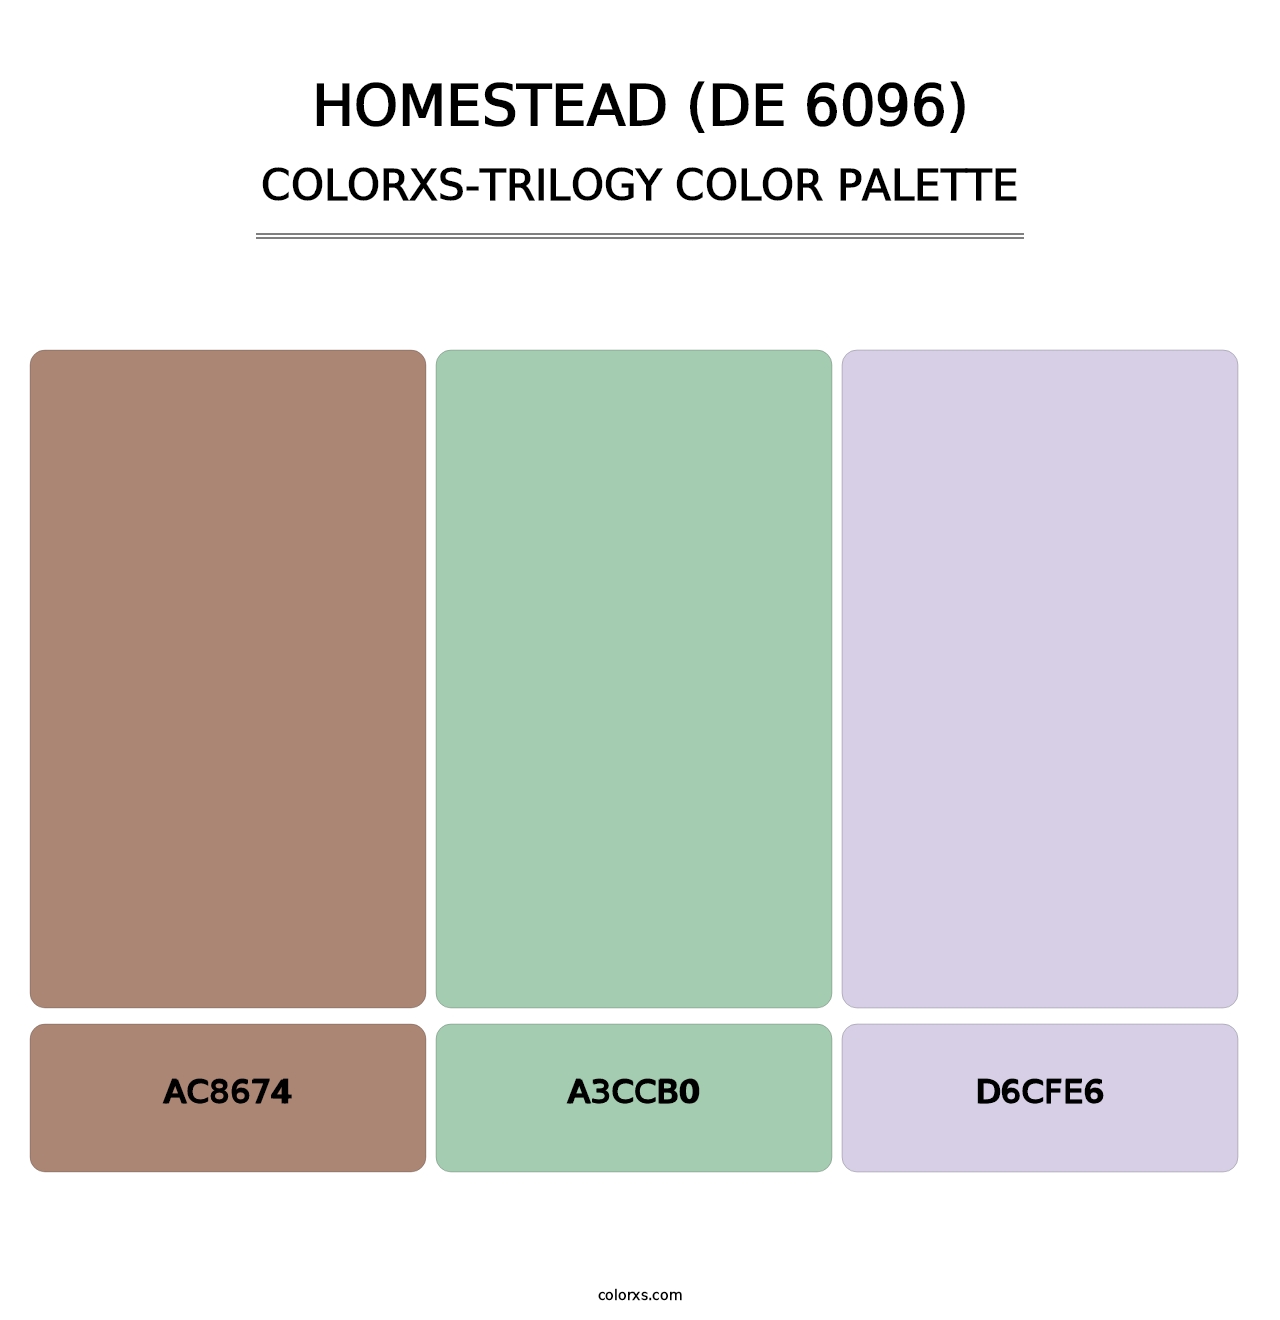 Homestead (DE 6096) - Colorxs Trilogy Palette